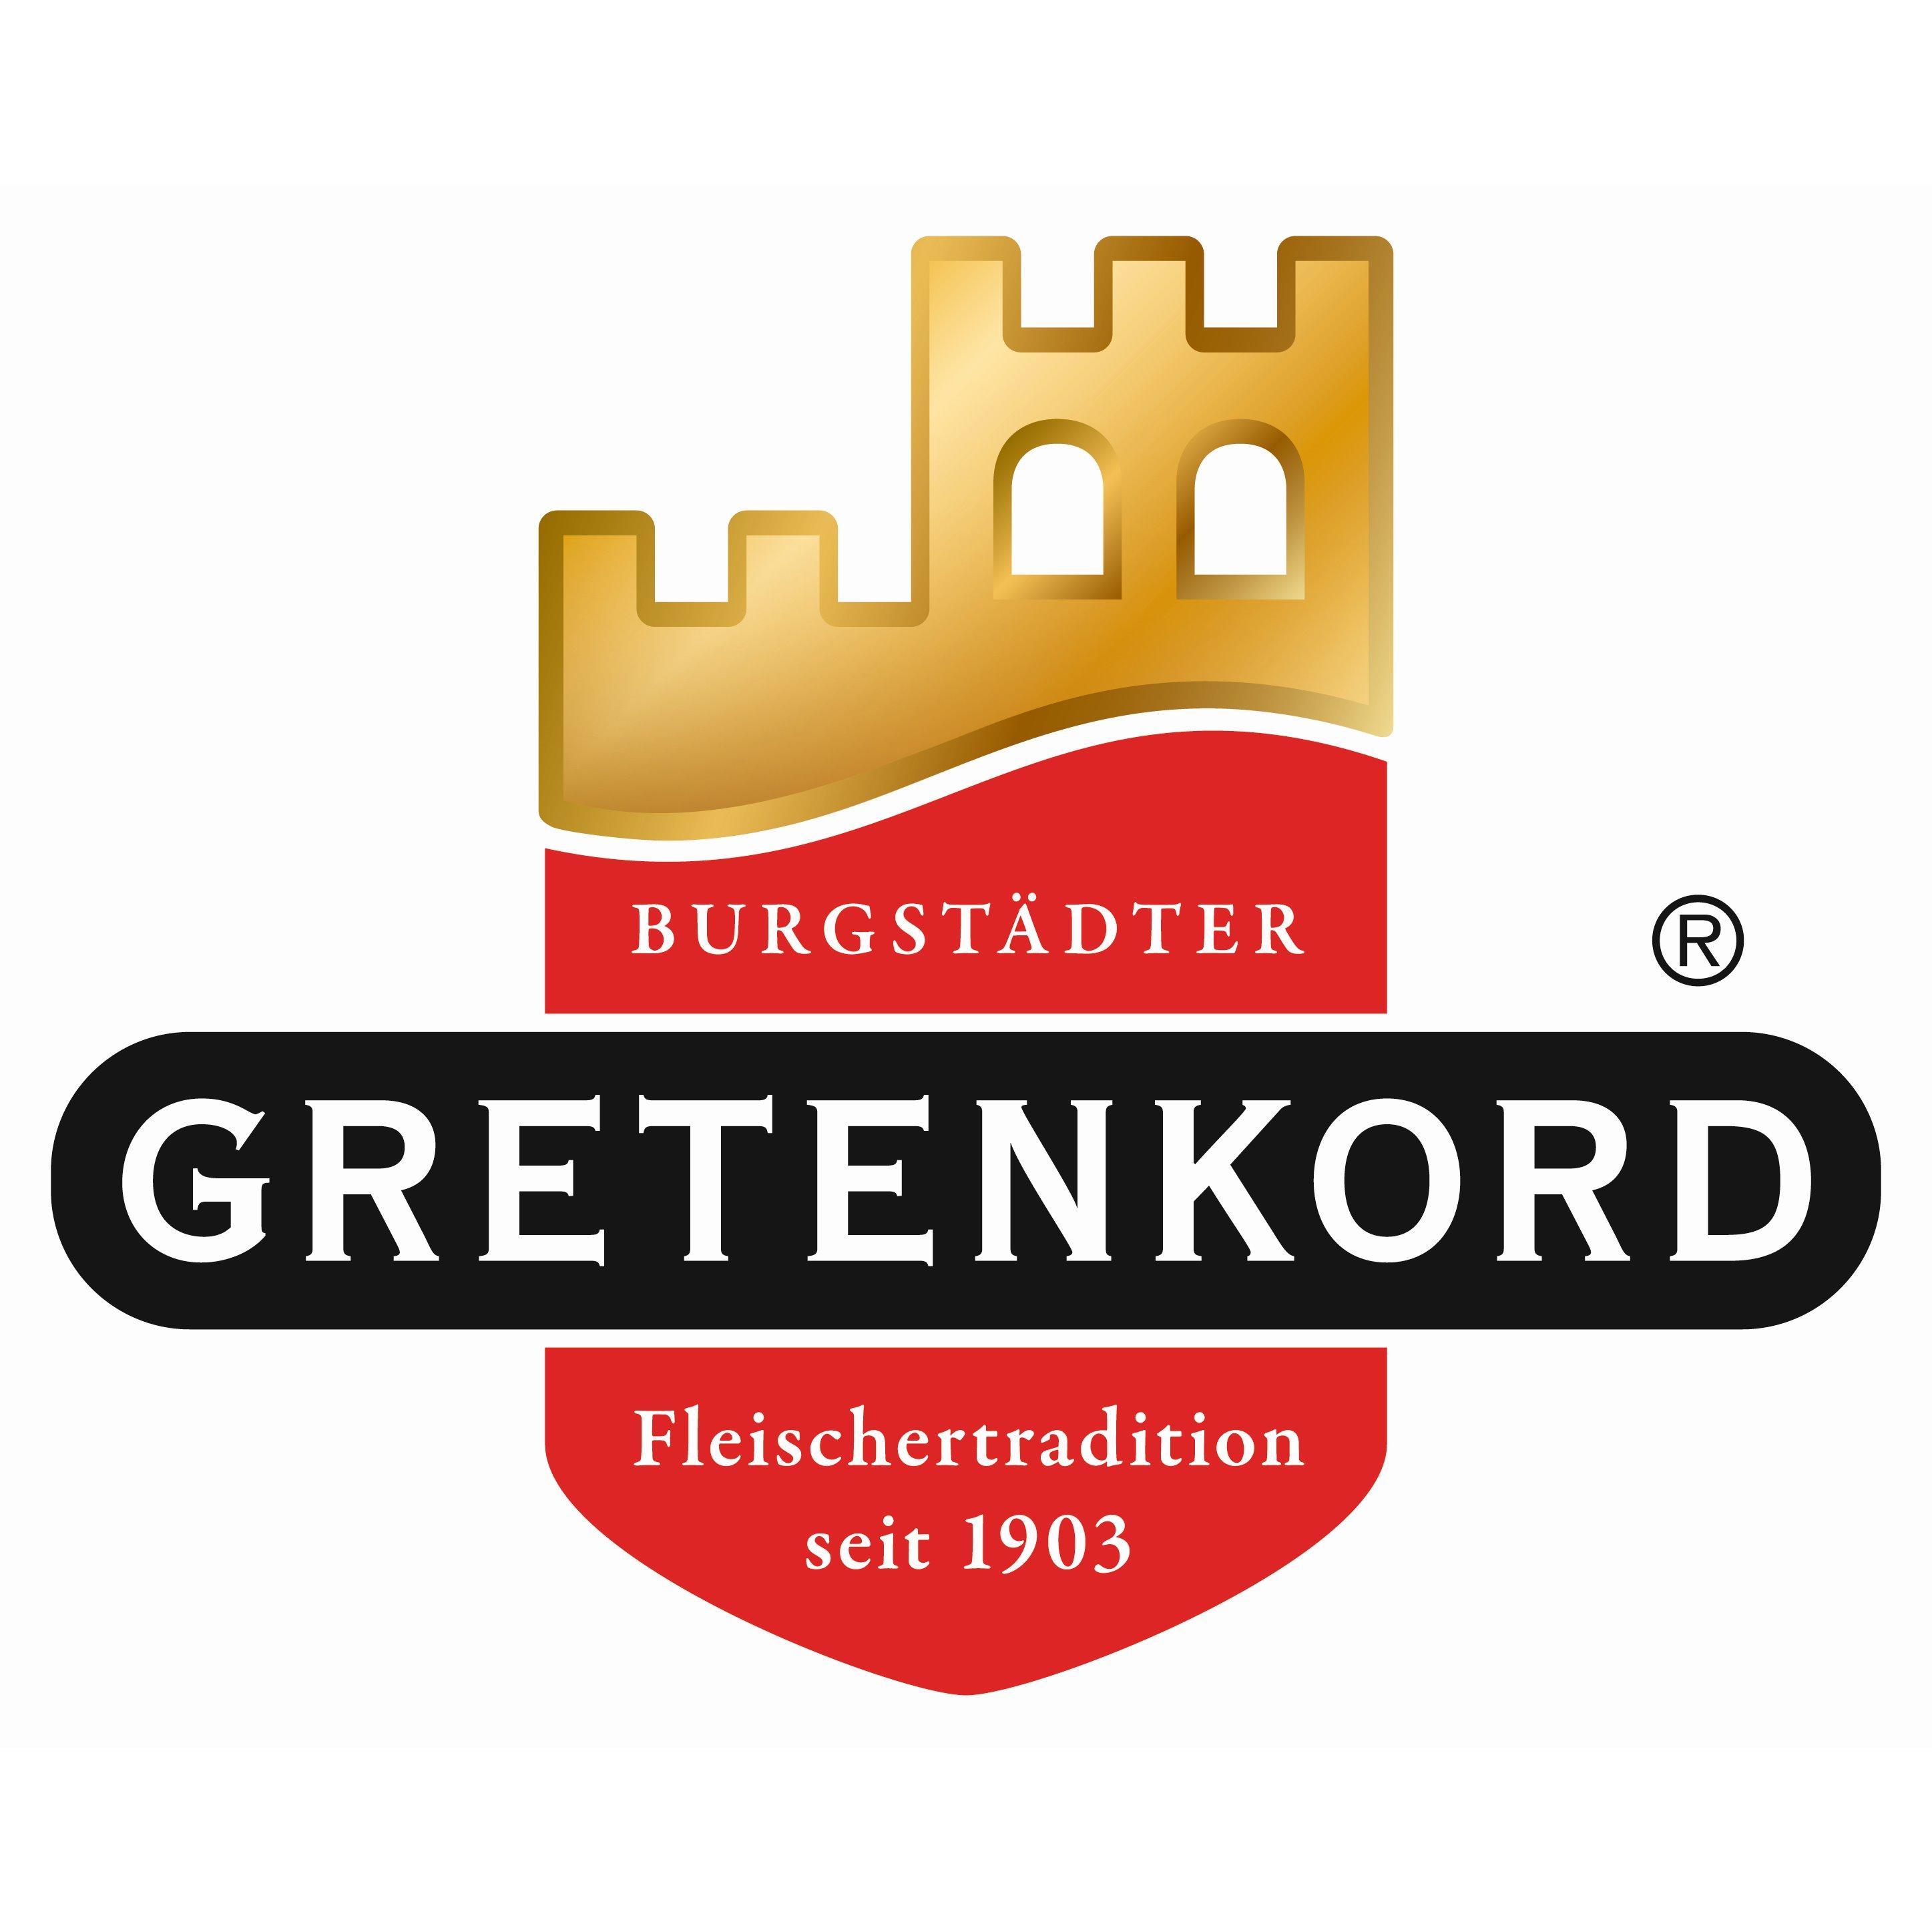 Fleischerei Gretenkord in Chemnitz - Logo